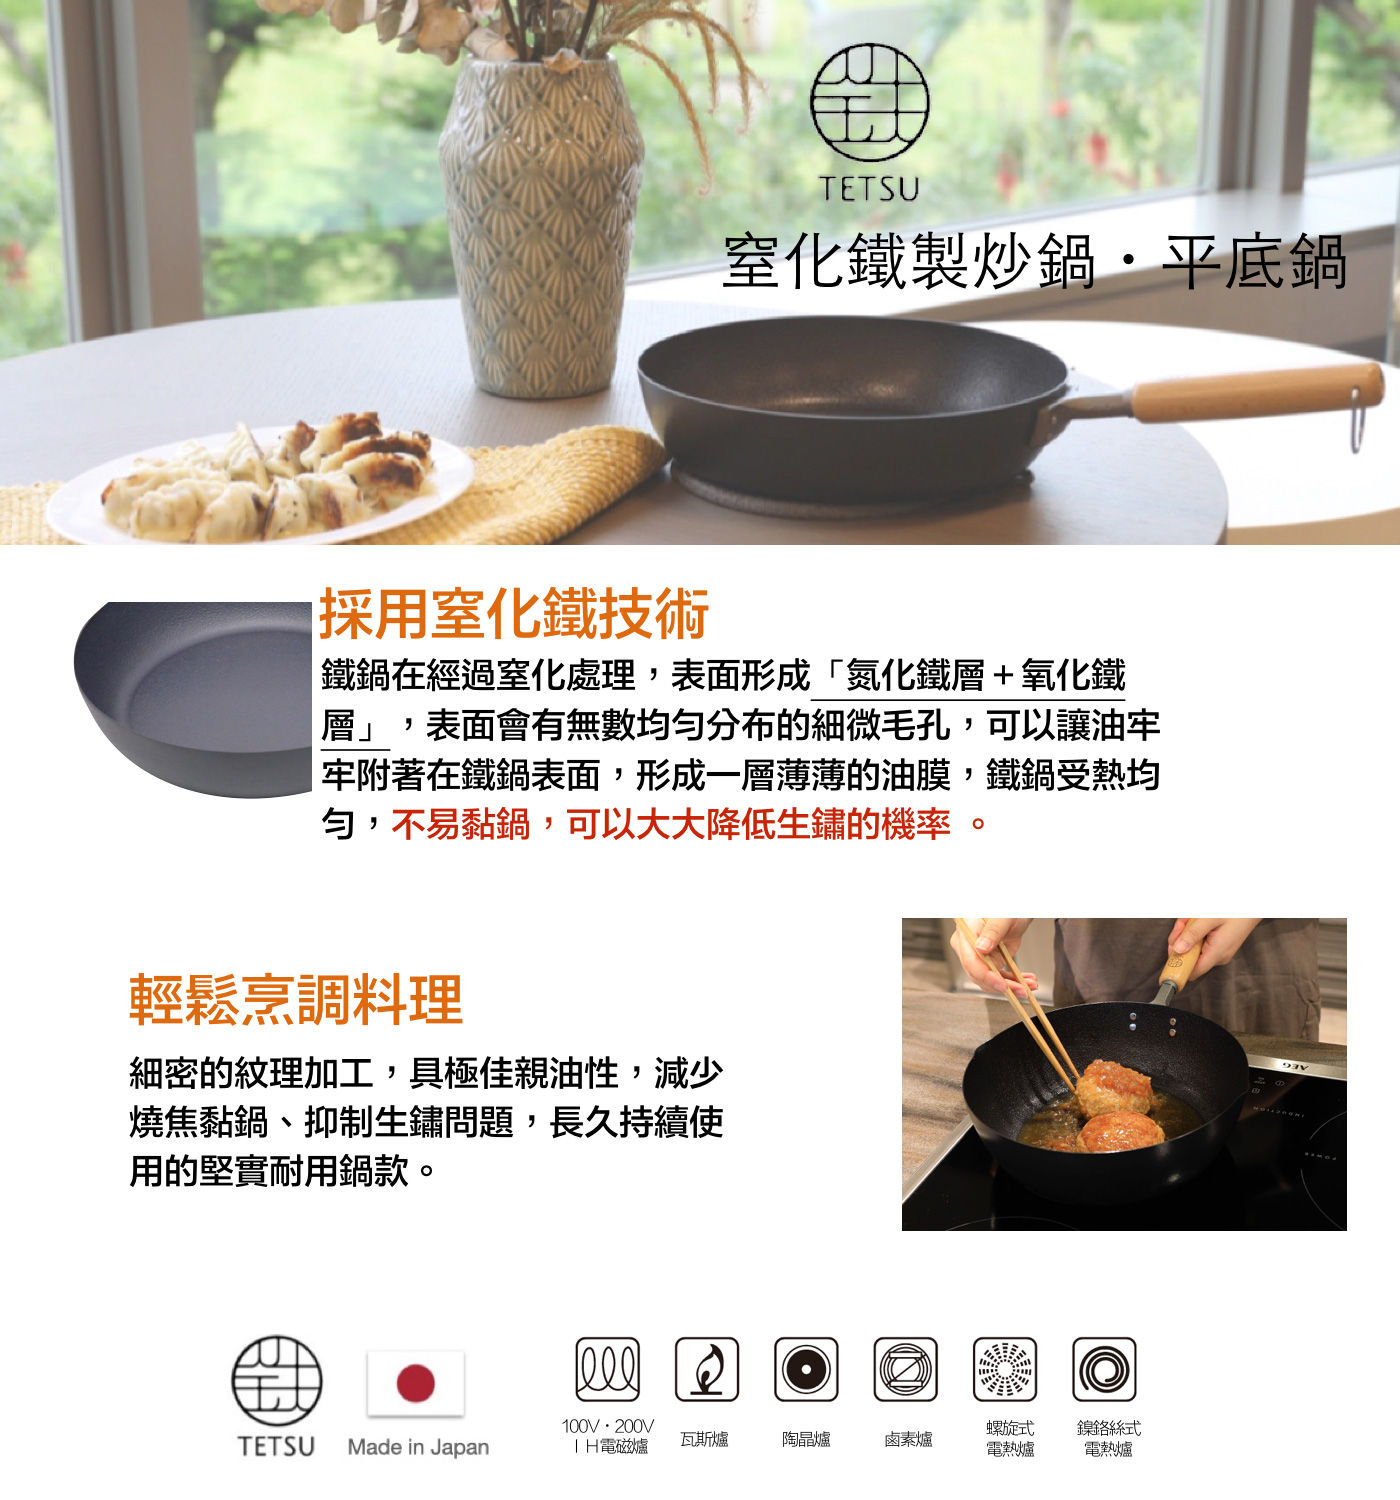 TETSU 窒化鐵製玉子燒鍋，可烹飪日式玉子燒、蛋捲以及各式甜點，耐磨、耐腐蝕，不易生鏽。